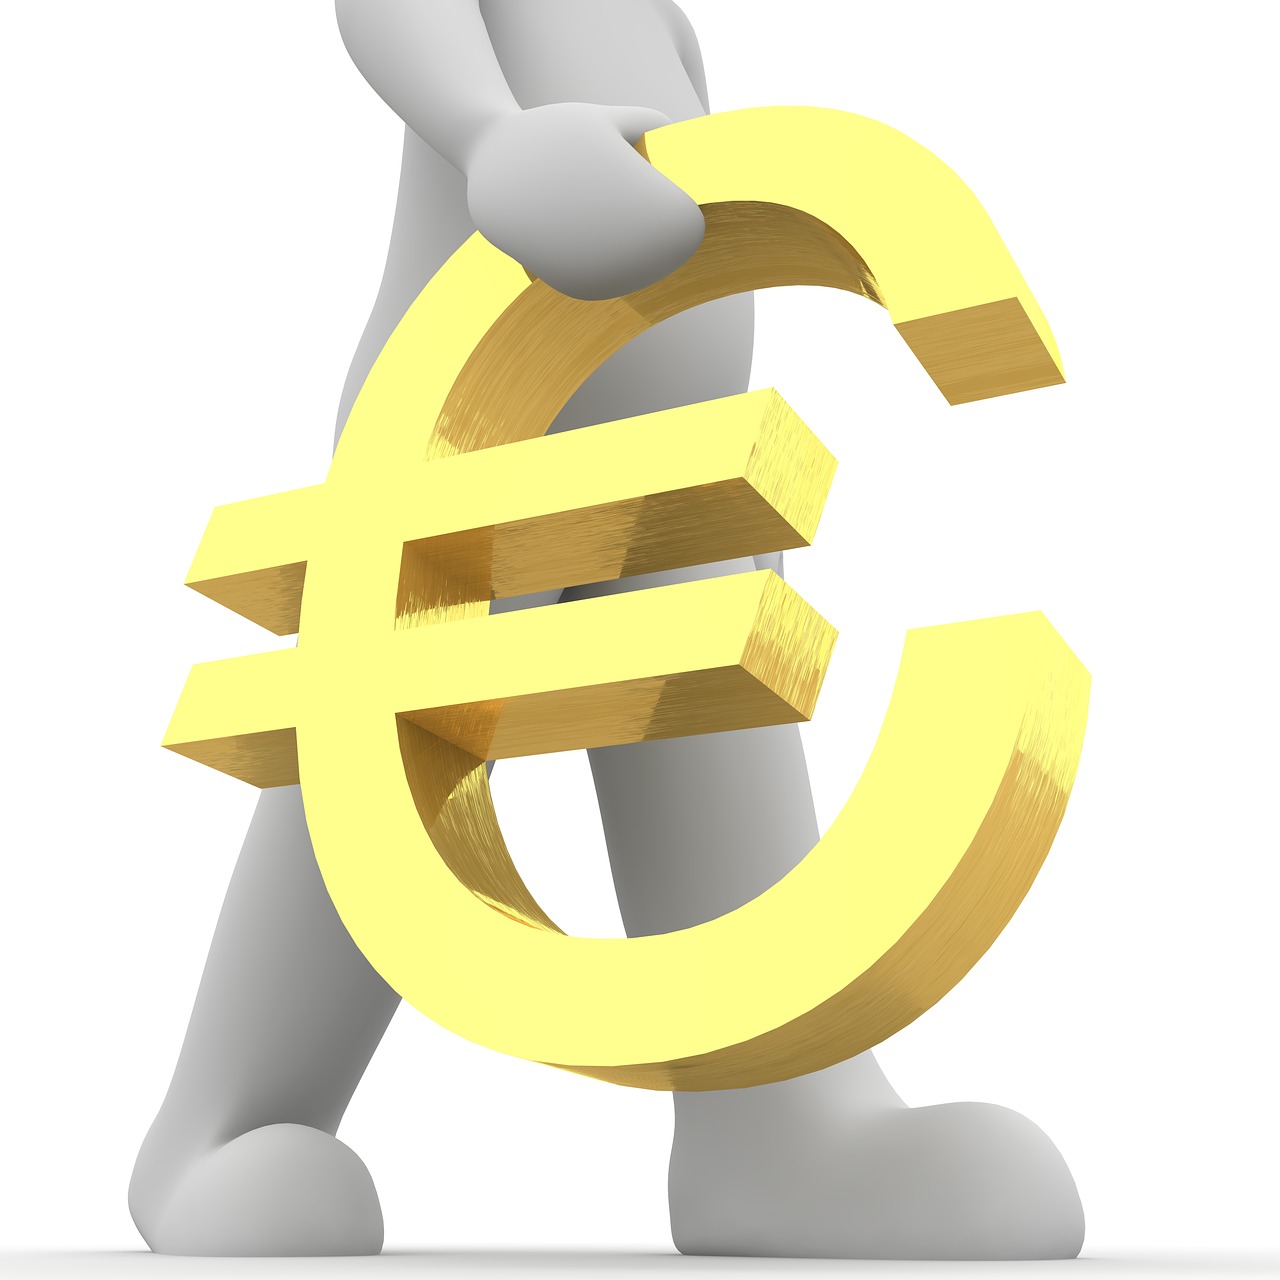 Euras, Personažai, 3D, Simbolis, Europa, Valiuta, Euro Ženklas, Europietis, Finansai, Pinigai